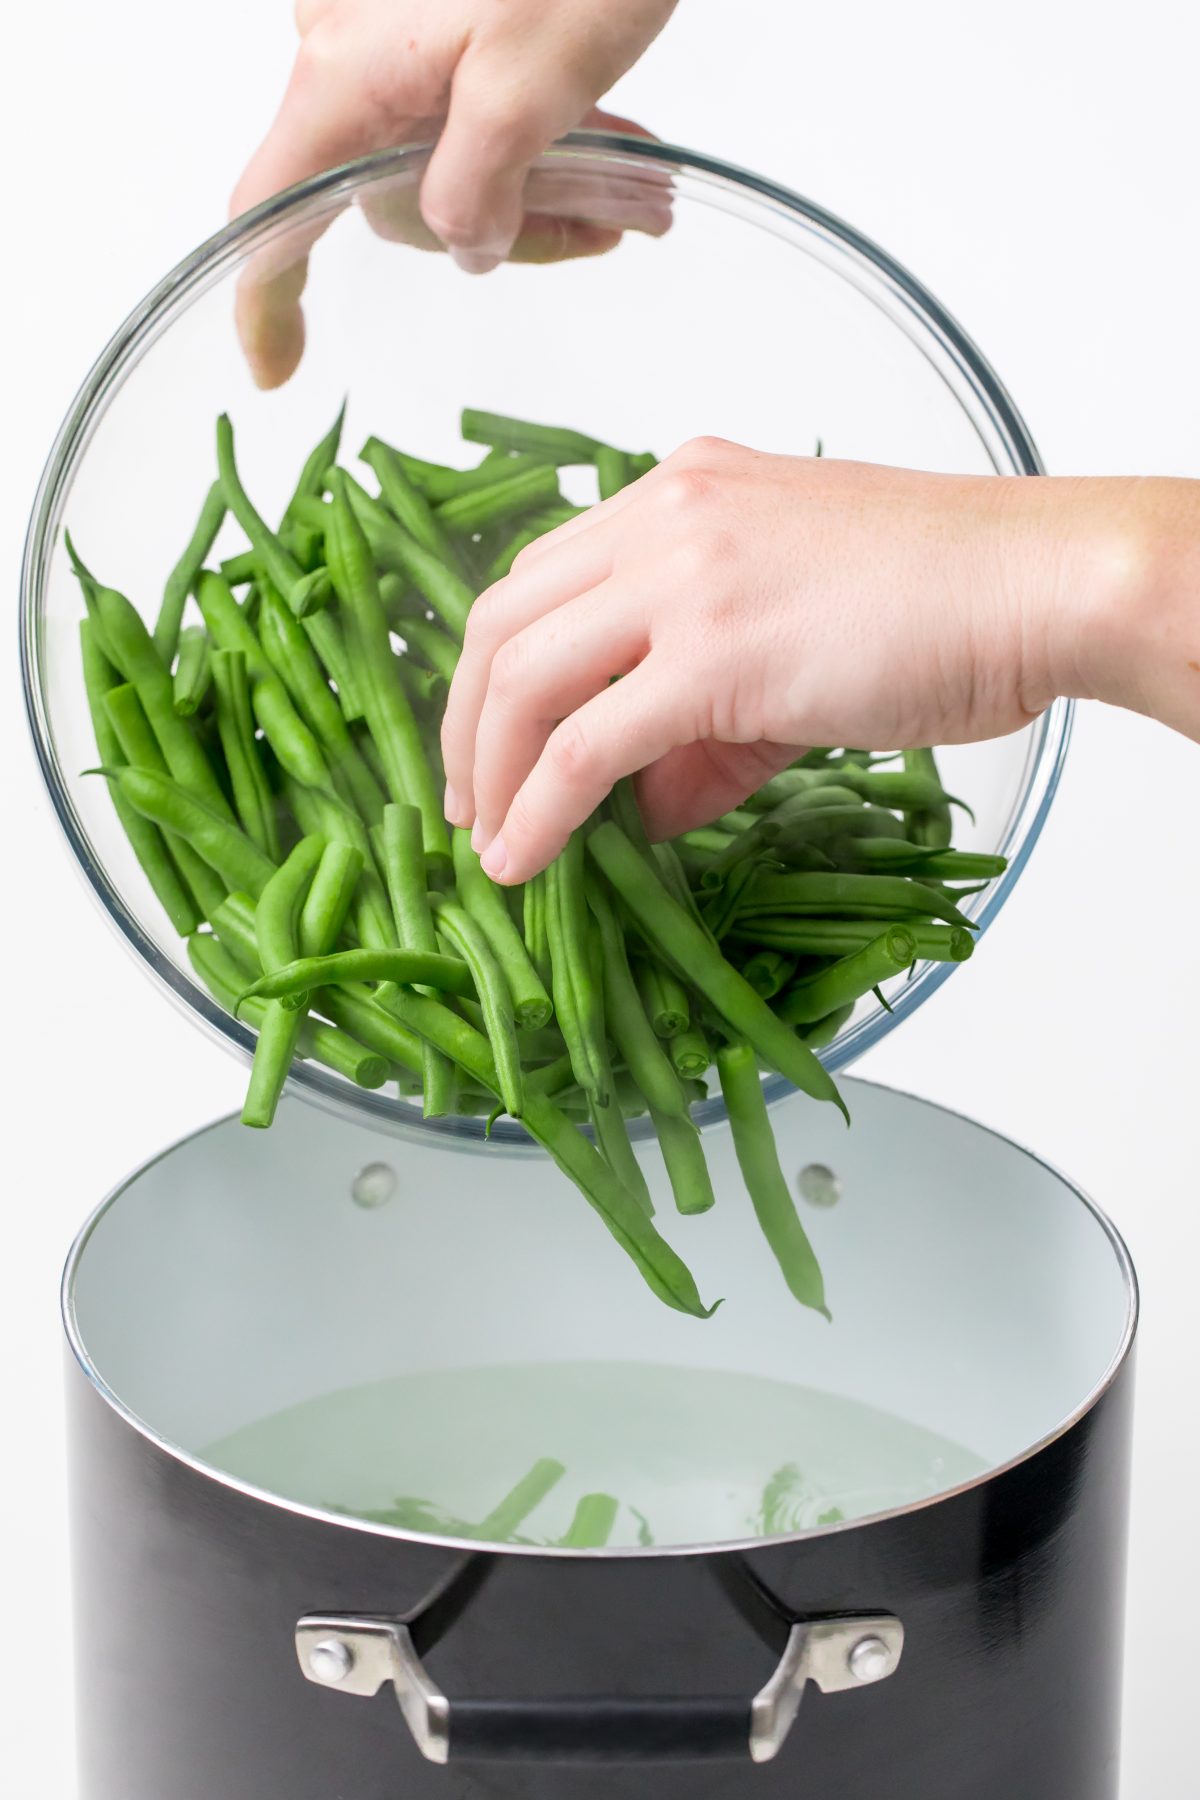 Blanche green beans